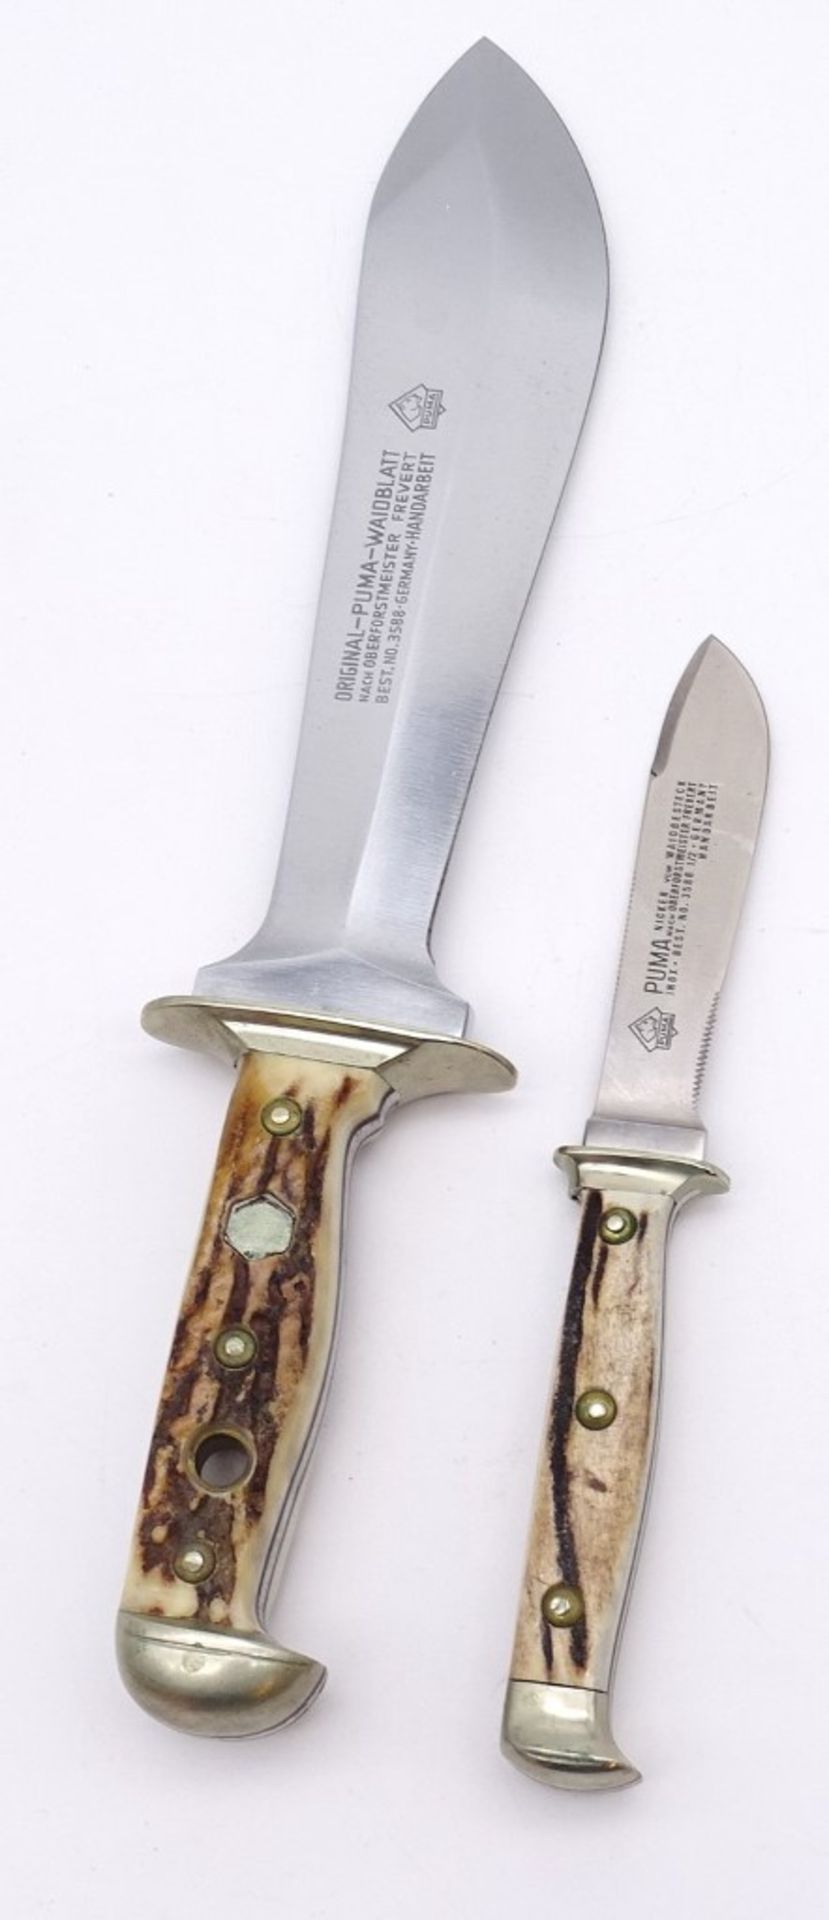 PUMA Waidbesteck Waidblatt Messer in Holzkasten, No. 3588, L. 33,0cm, mit Scheide u. kl. Messer - Bild 5 aus 6